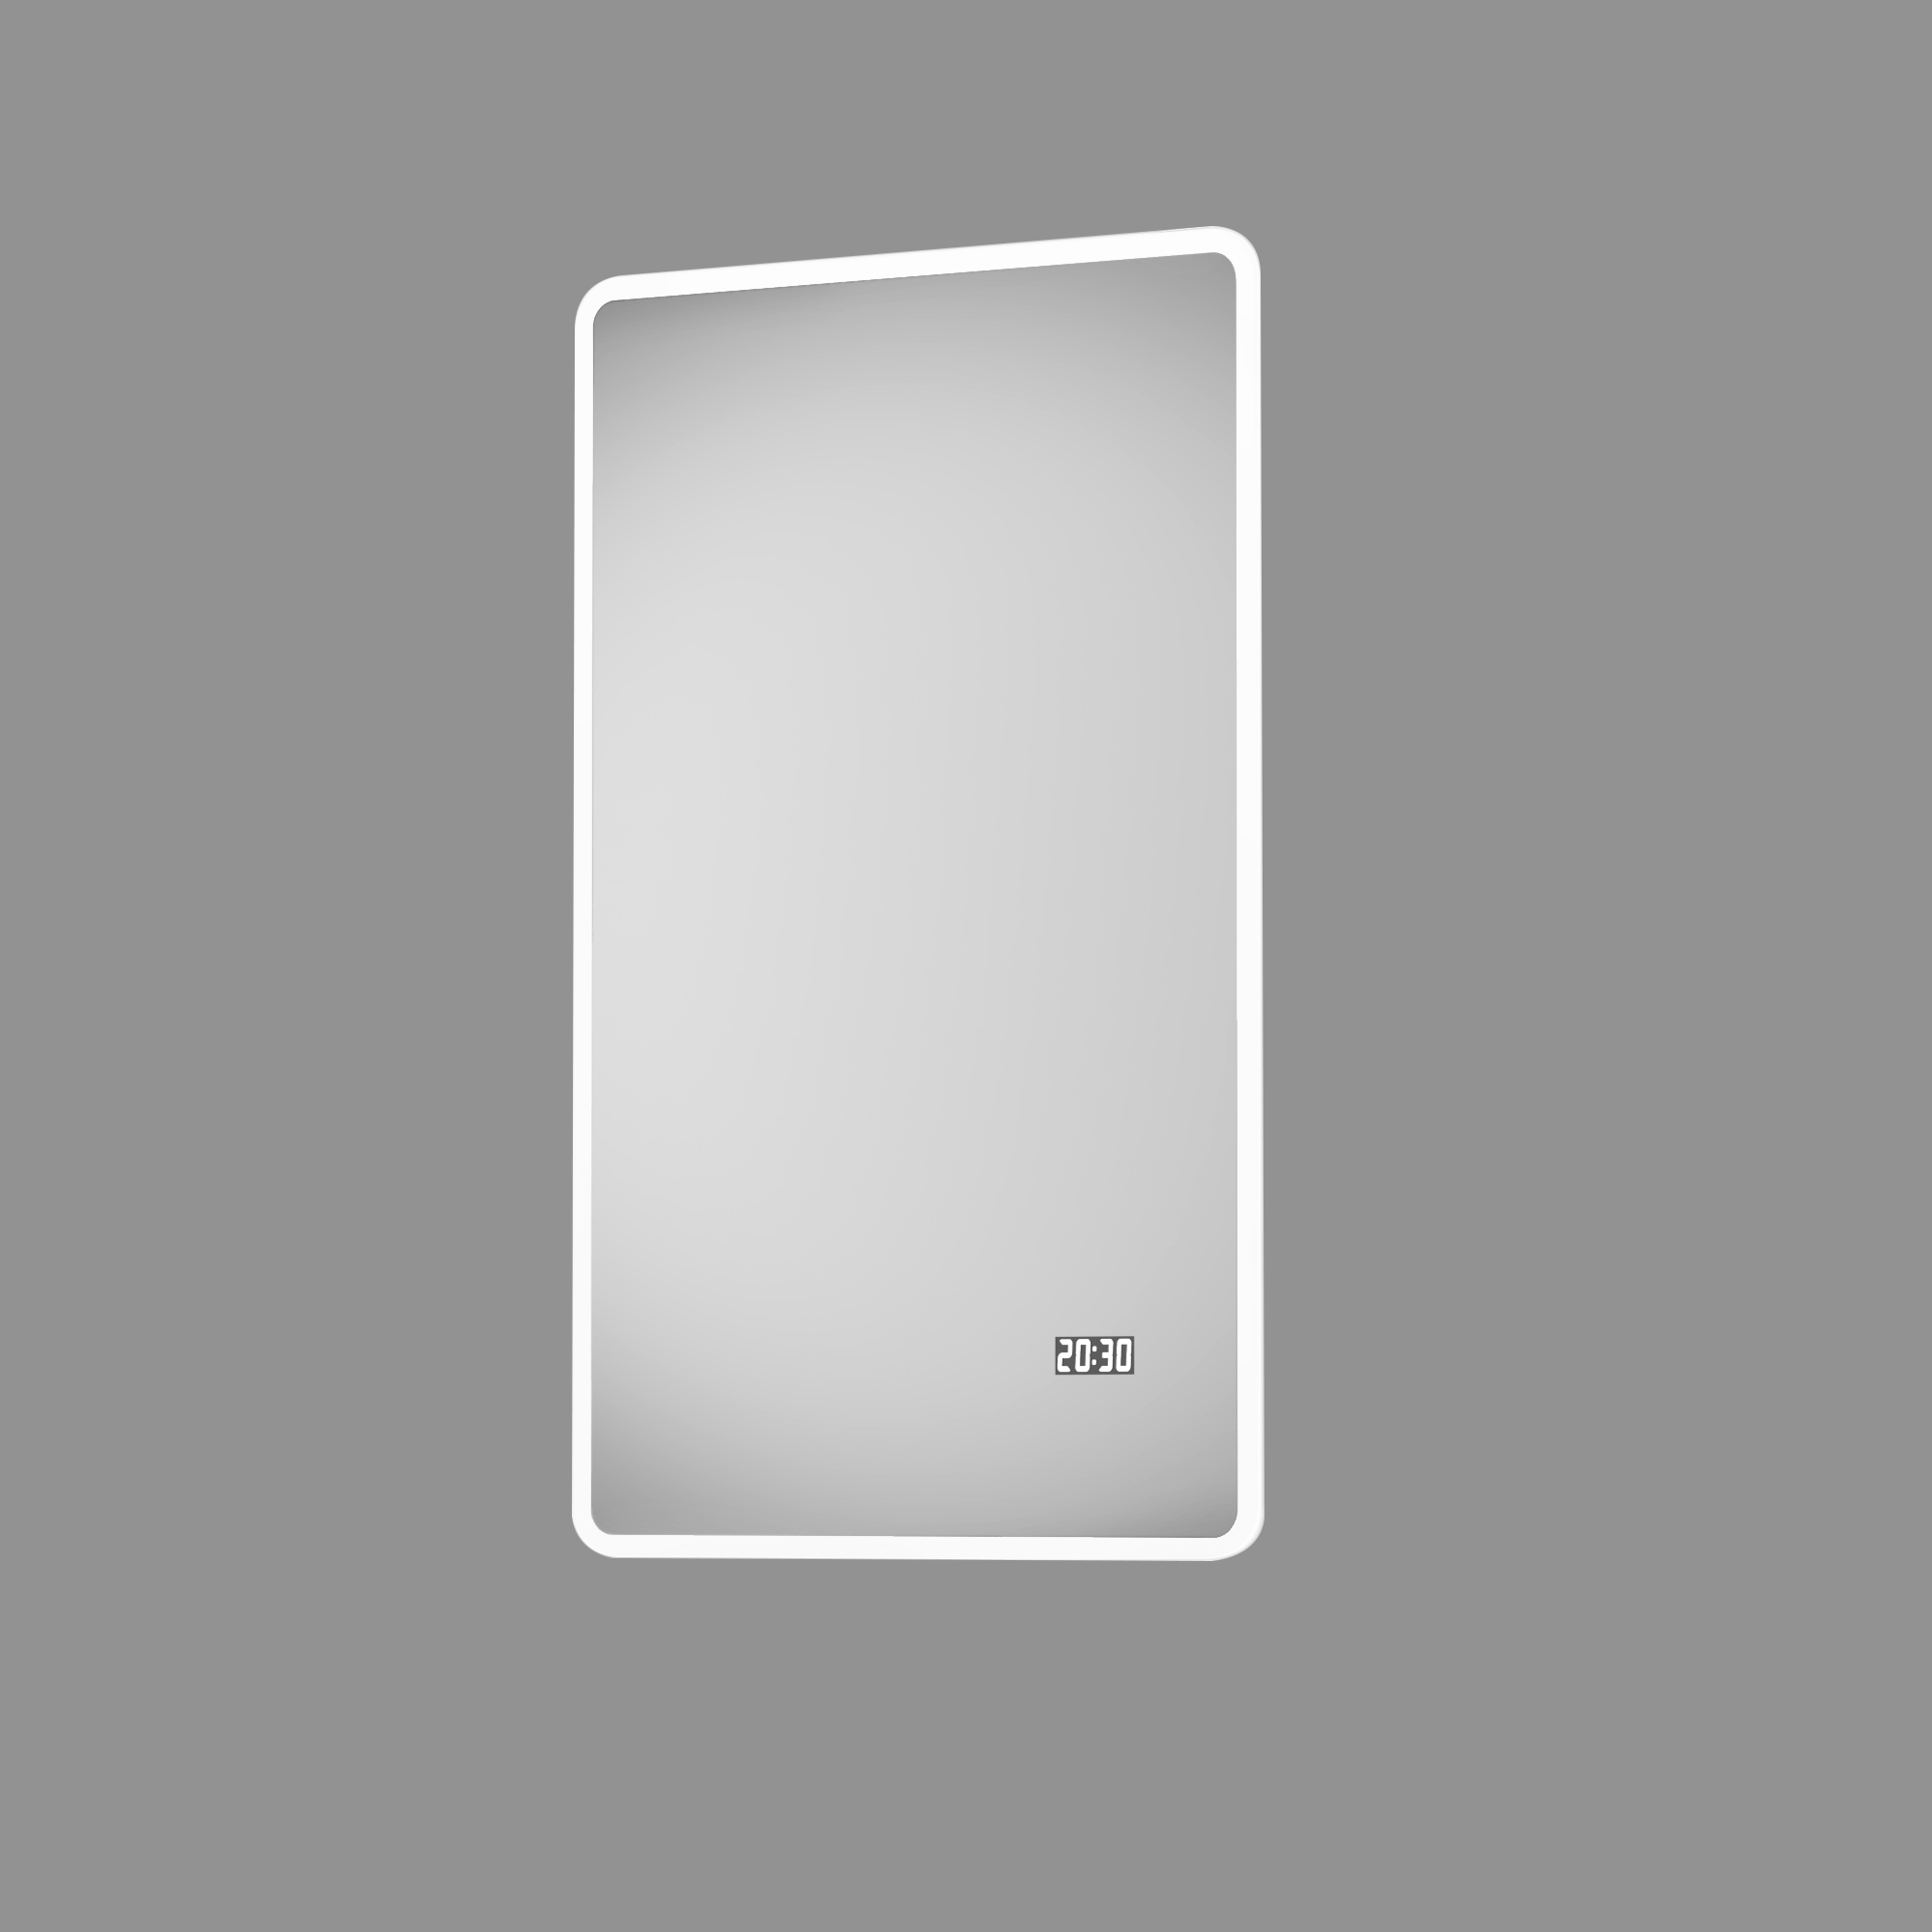 LED-Spiegel 'Silver Sunshine 2.0' mit Uhr 45 x 70 cm + product picture